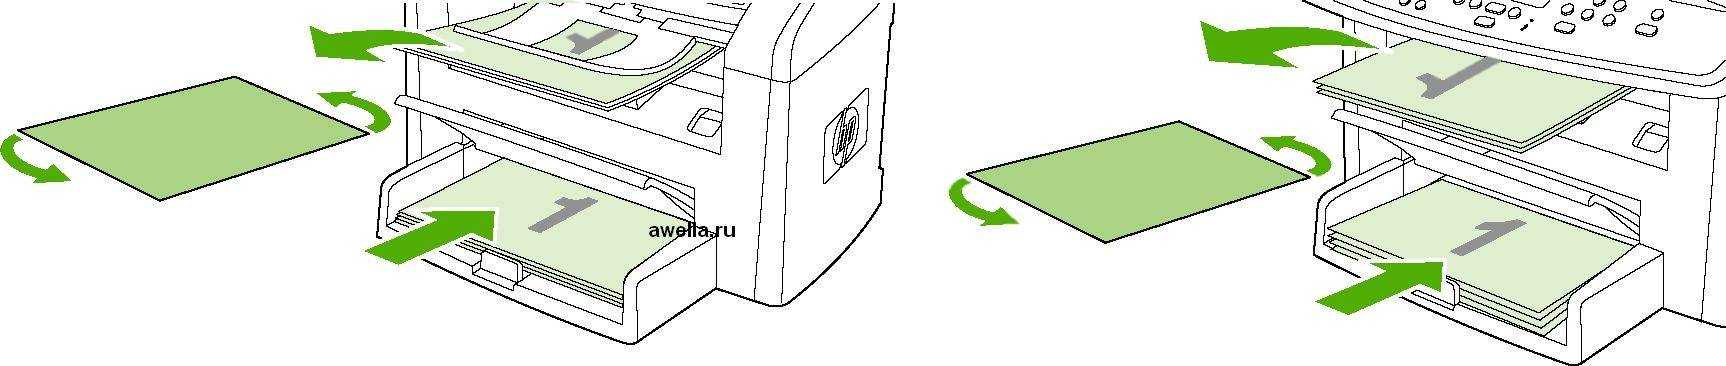 Правила печати документов на принтере